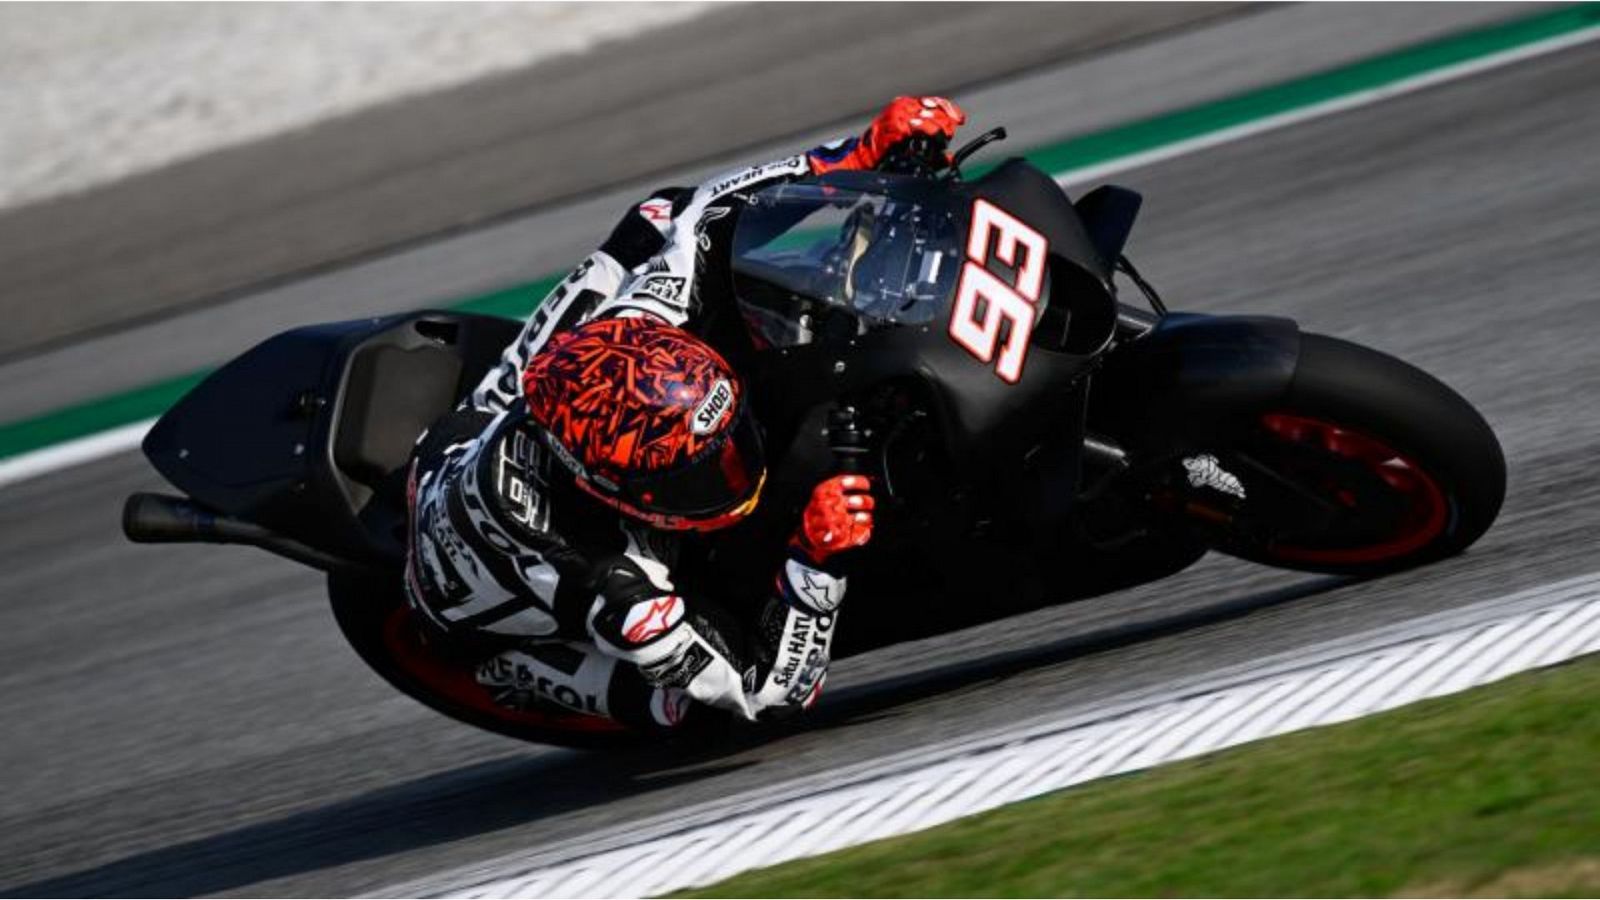 Ducati domina los test de Sepang mientras Márquez y Mir ya ruedan juntos en MotoGP -- Ver ahora